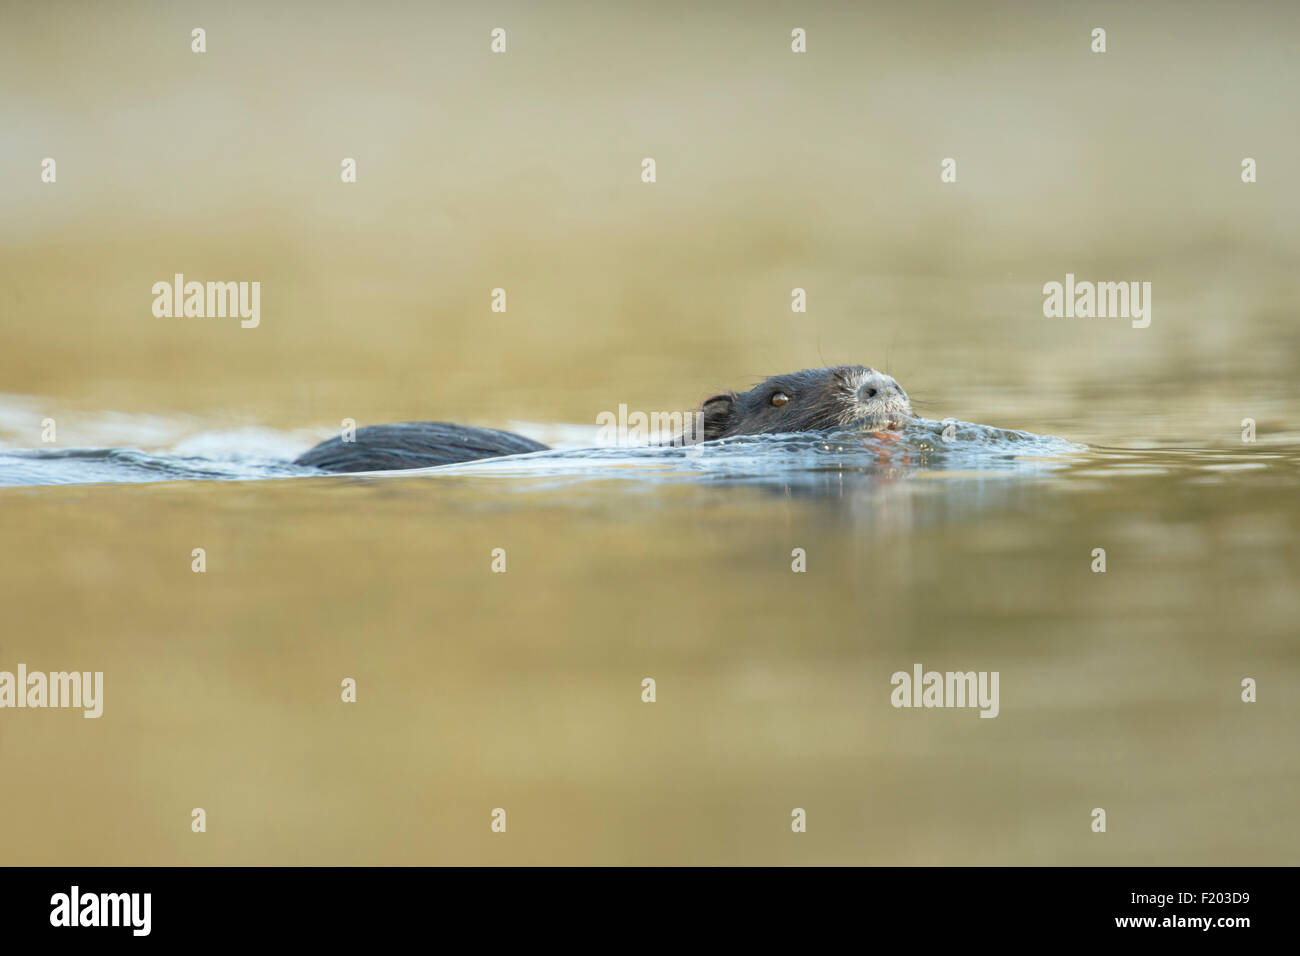 Nutrias / River Ratte / Nutria (Biber brummeln) schwimmt in Eile durch schön gefärbtem Wasser. Stockfoto